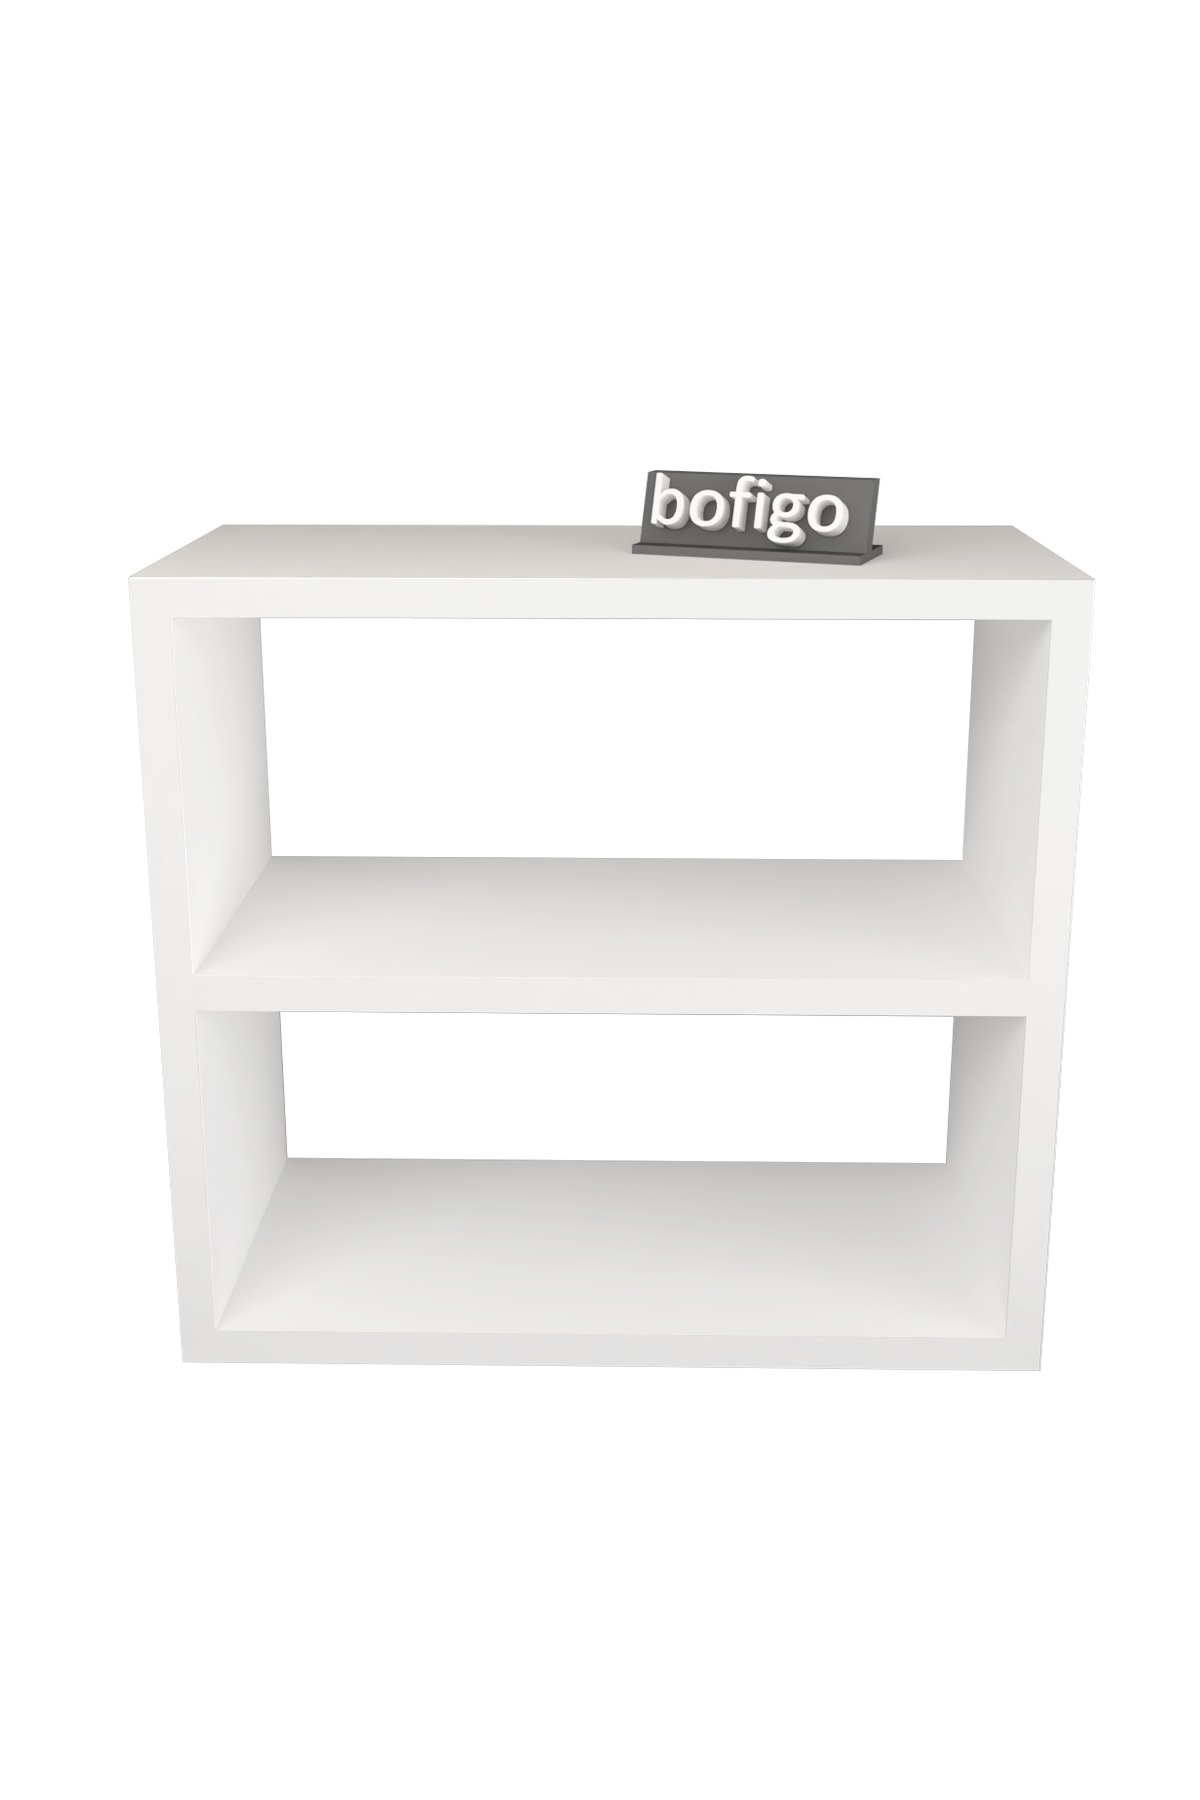 Bofigo Counter Top Shelf Spice Rack White